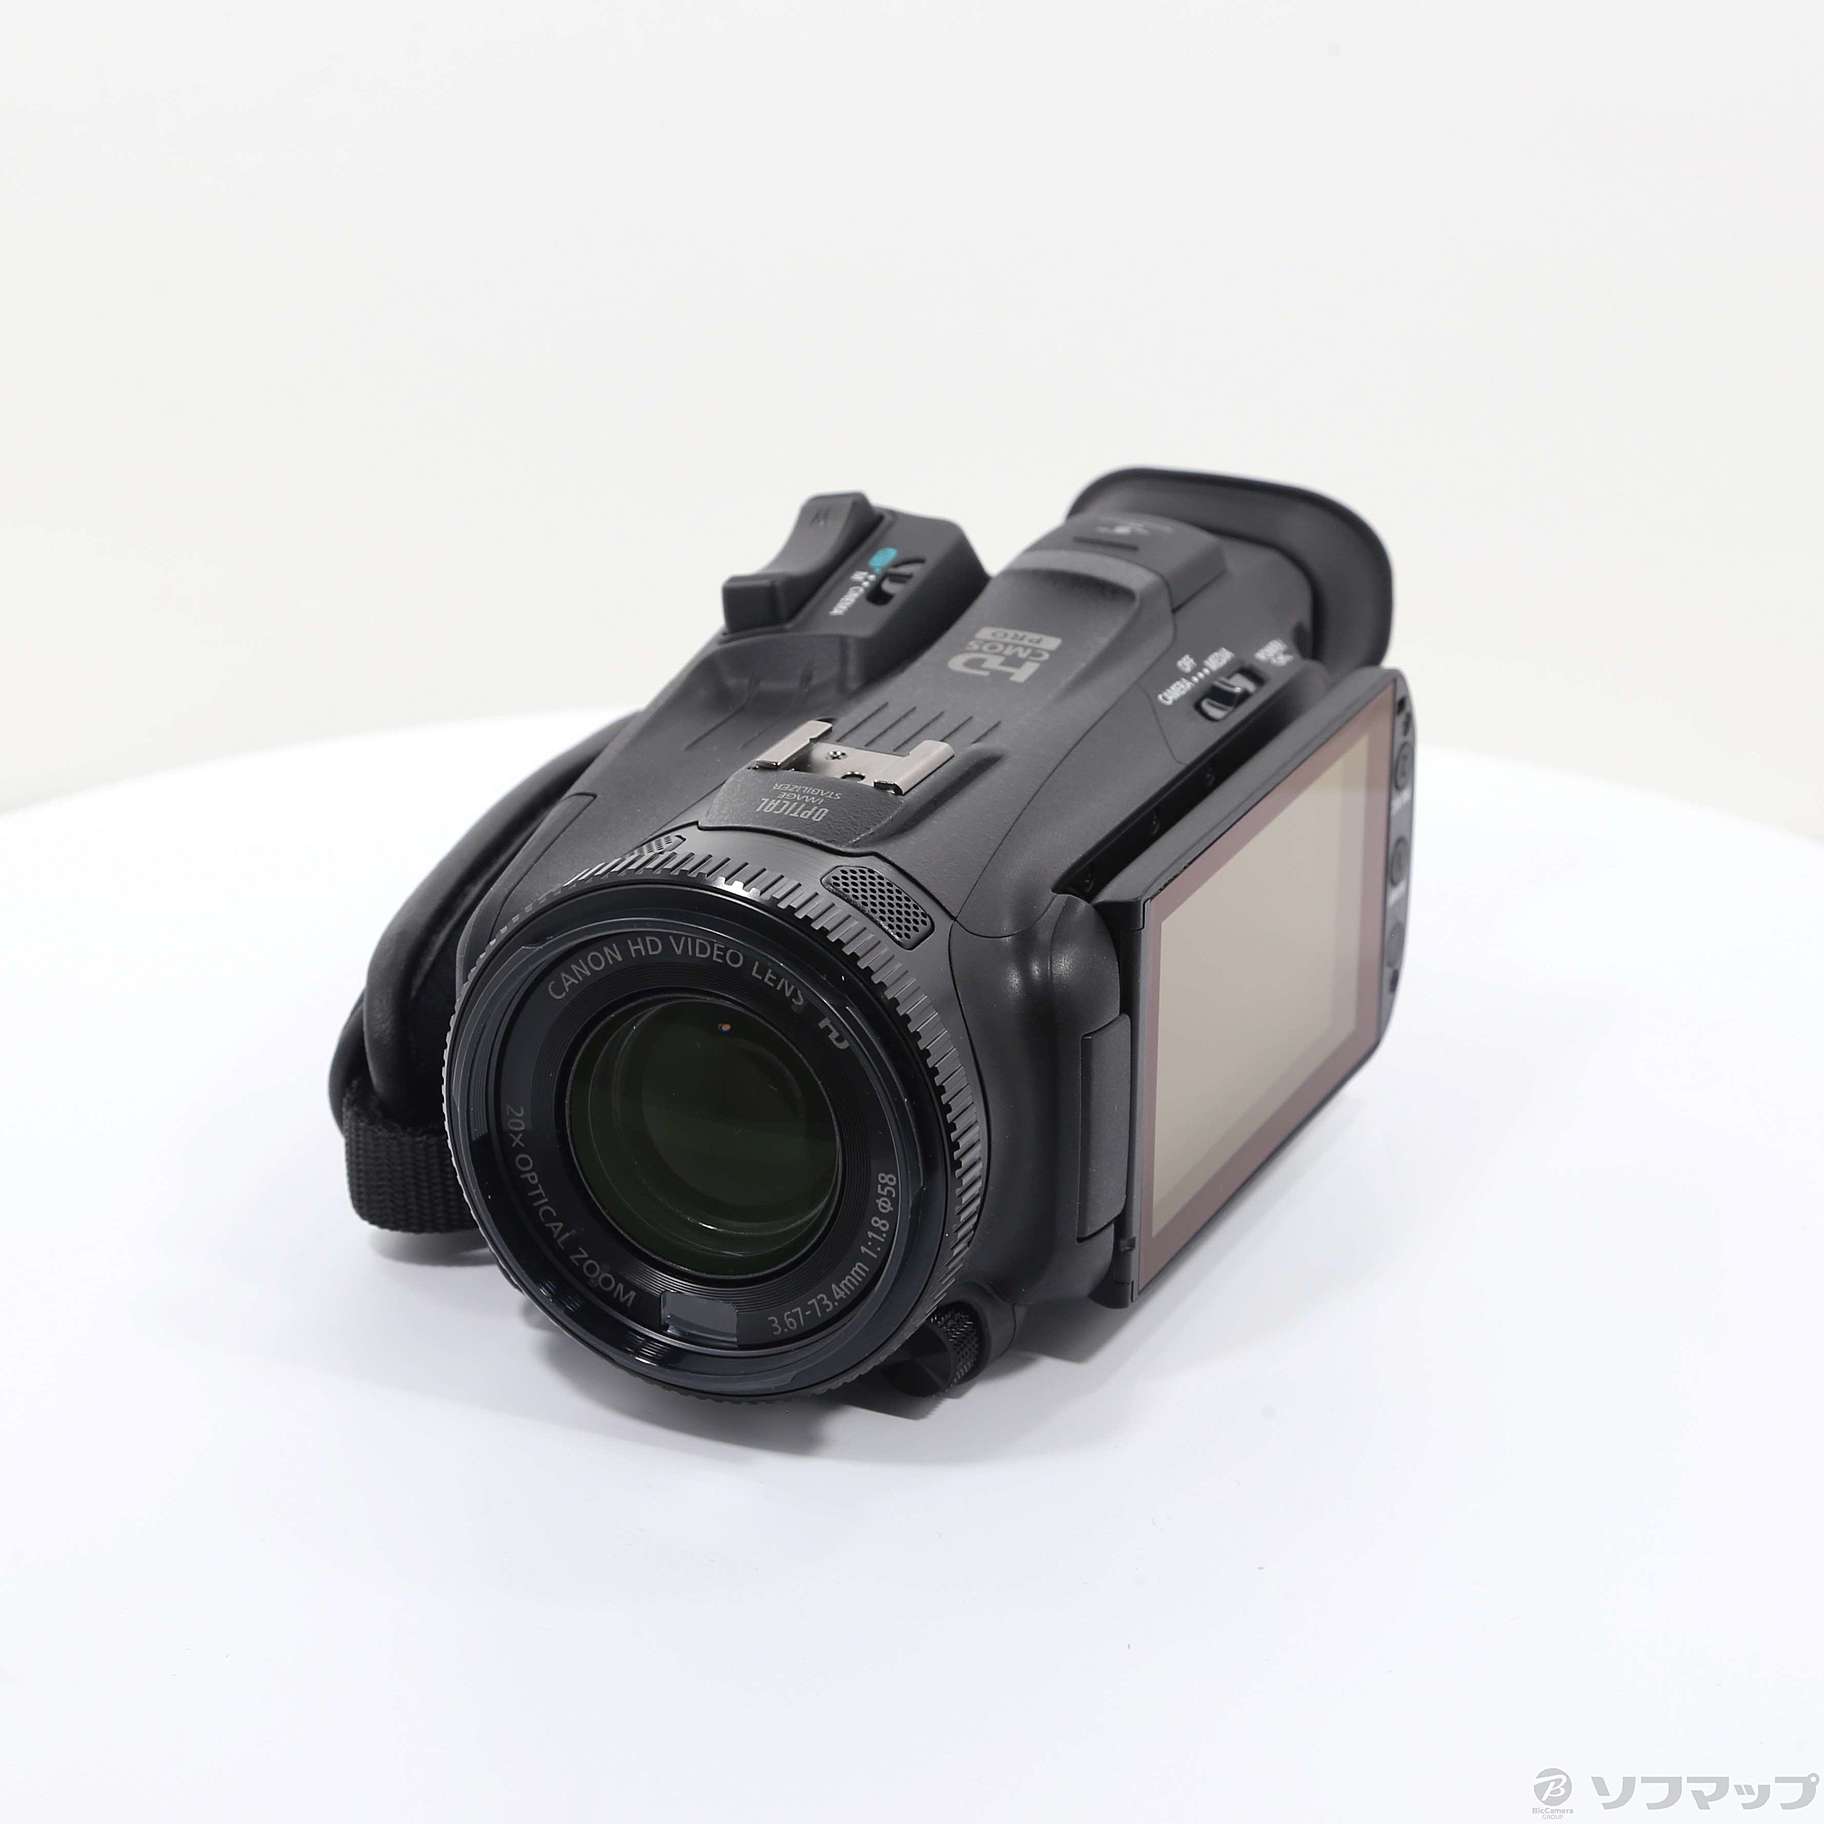 ivis g40 Canon ビデオカメラ